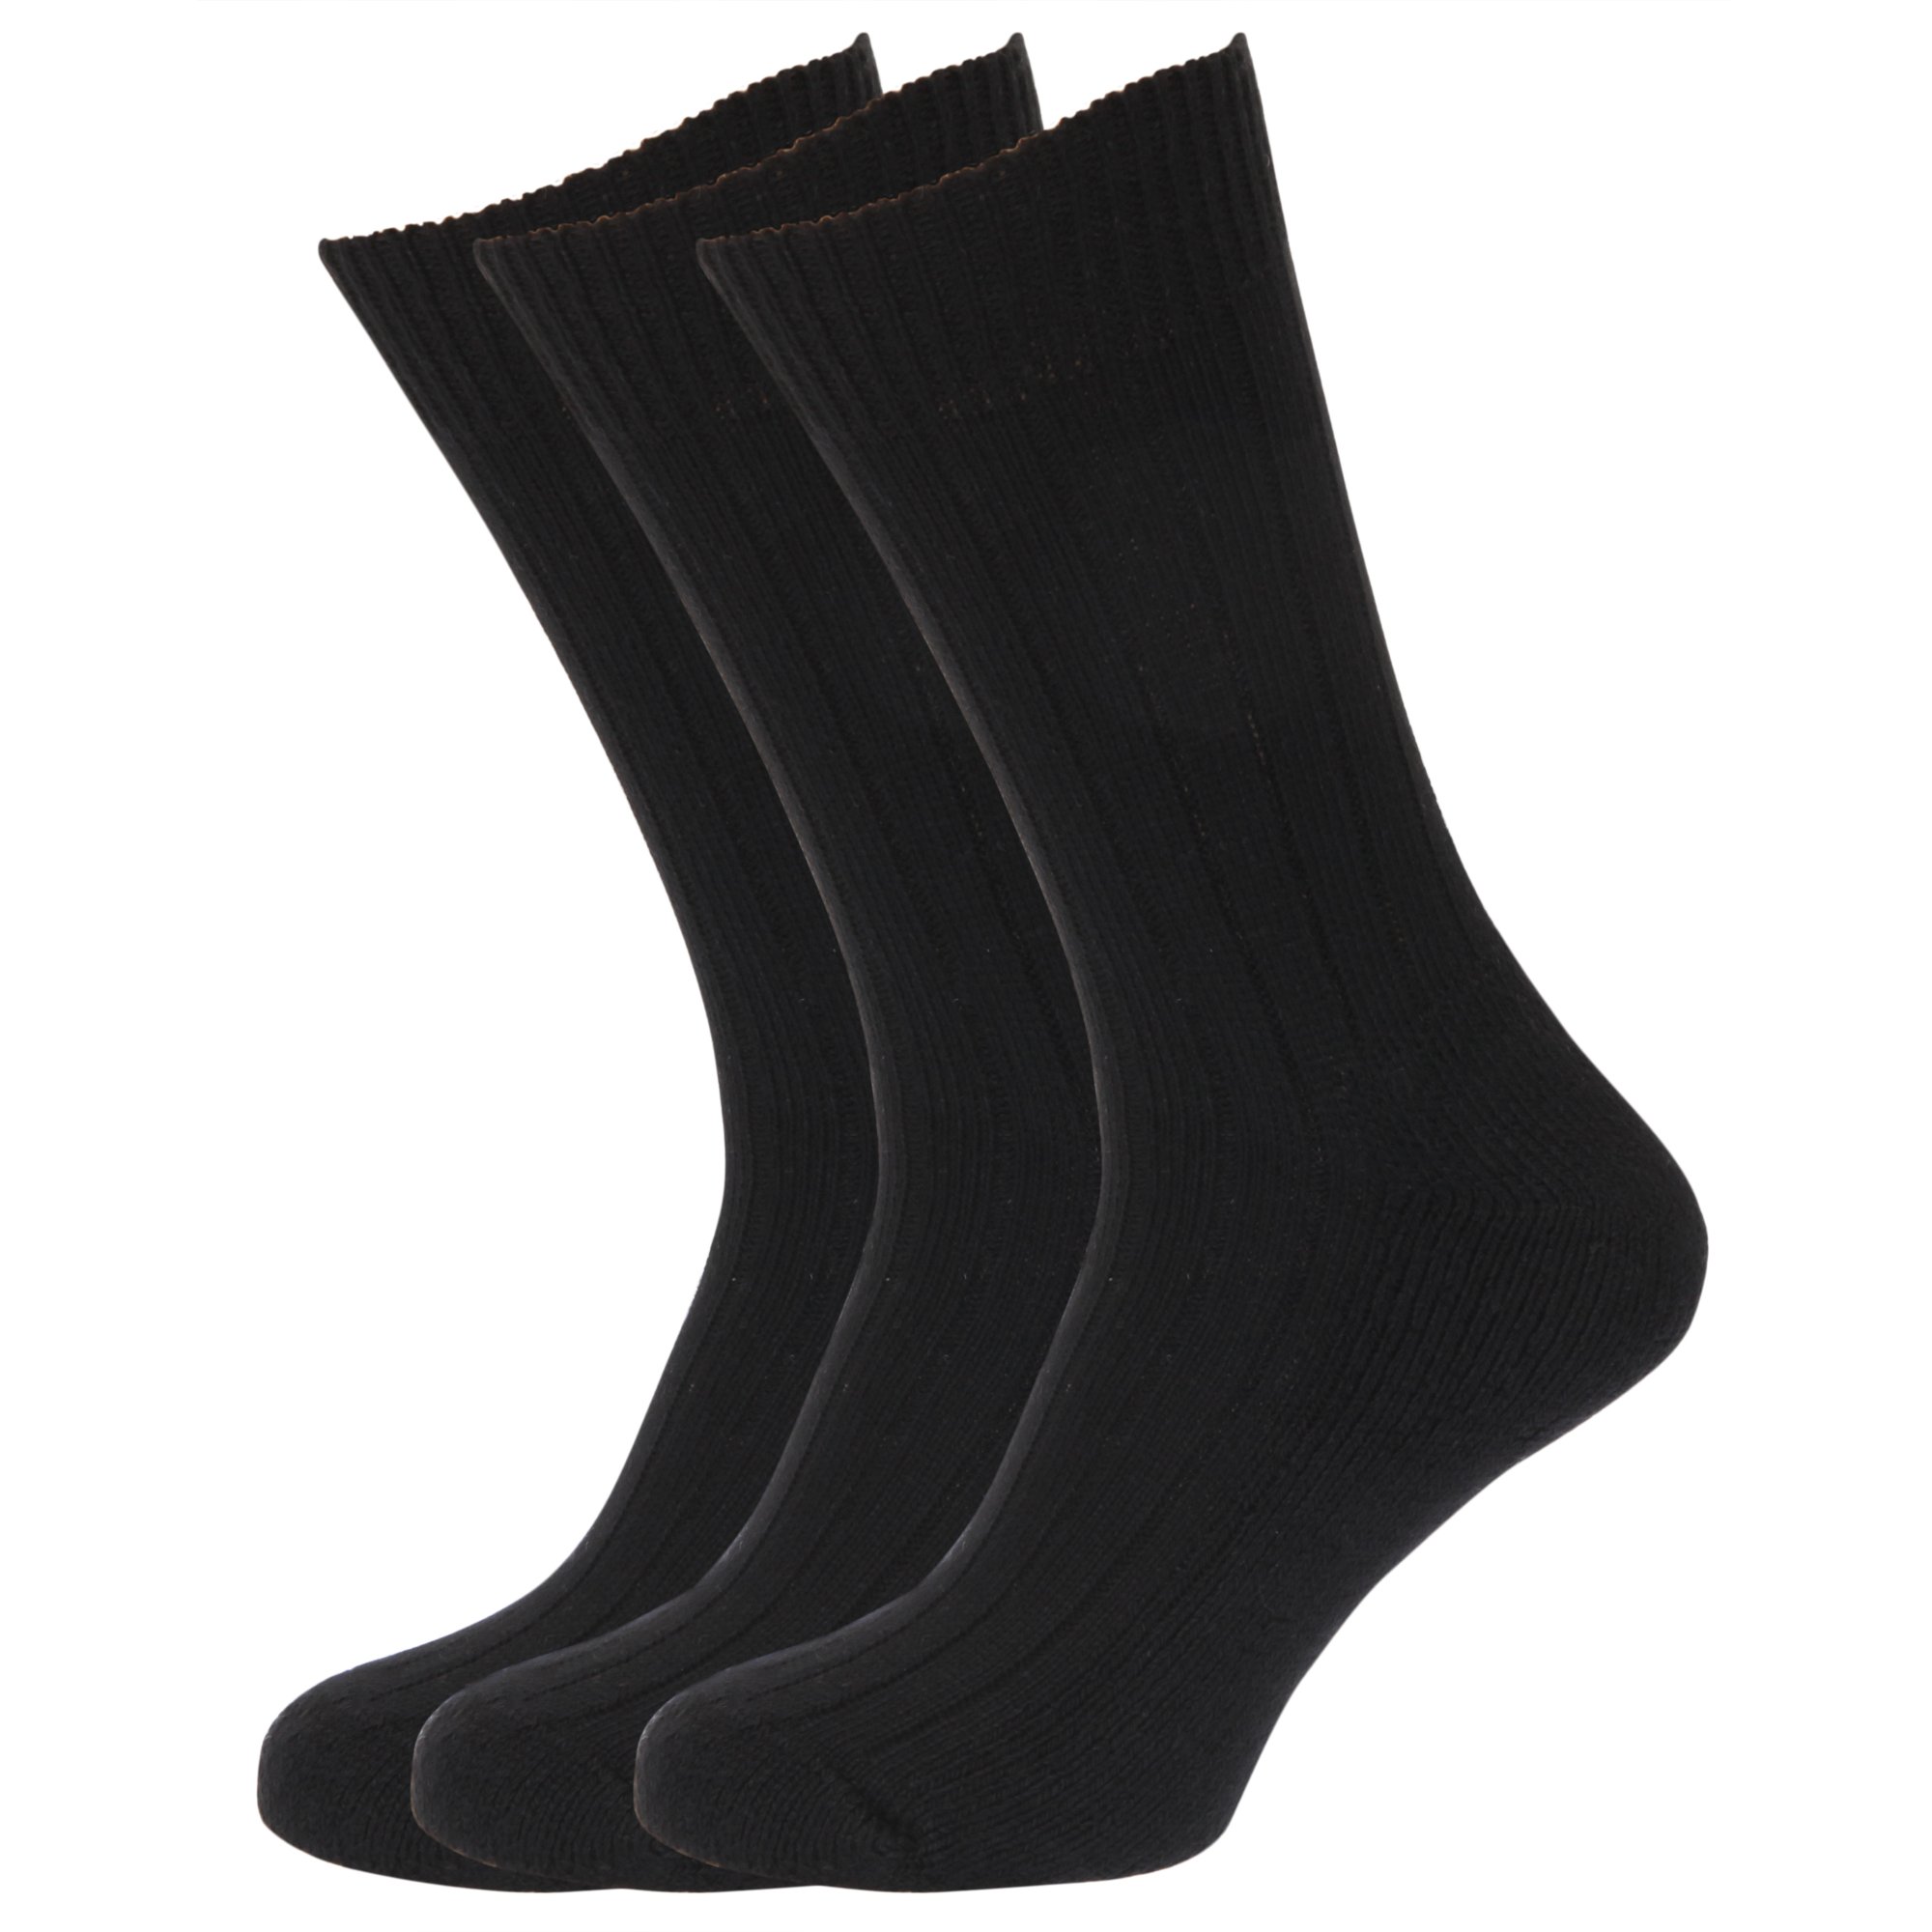 Calcetines deportivos dinamicos Negro - Calcetines de hombre